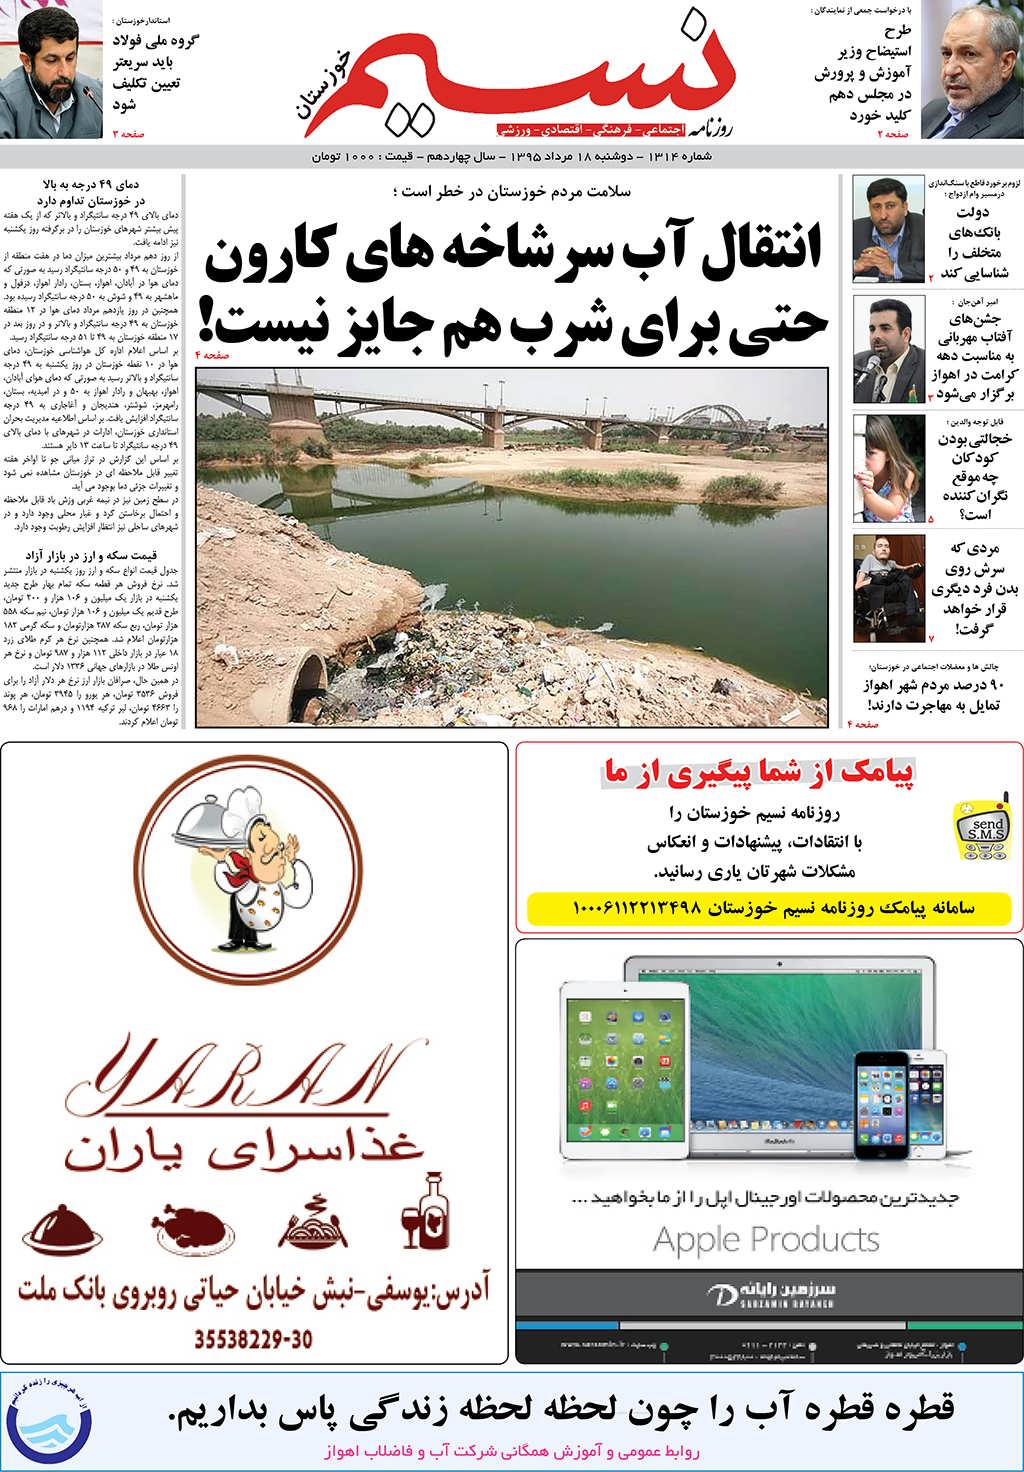 صفحه اصلی روزنامه نسیم شماره 1314